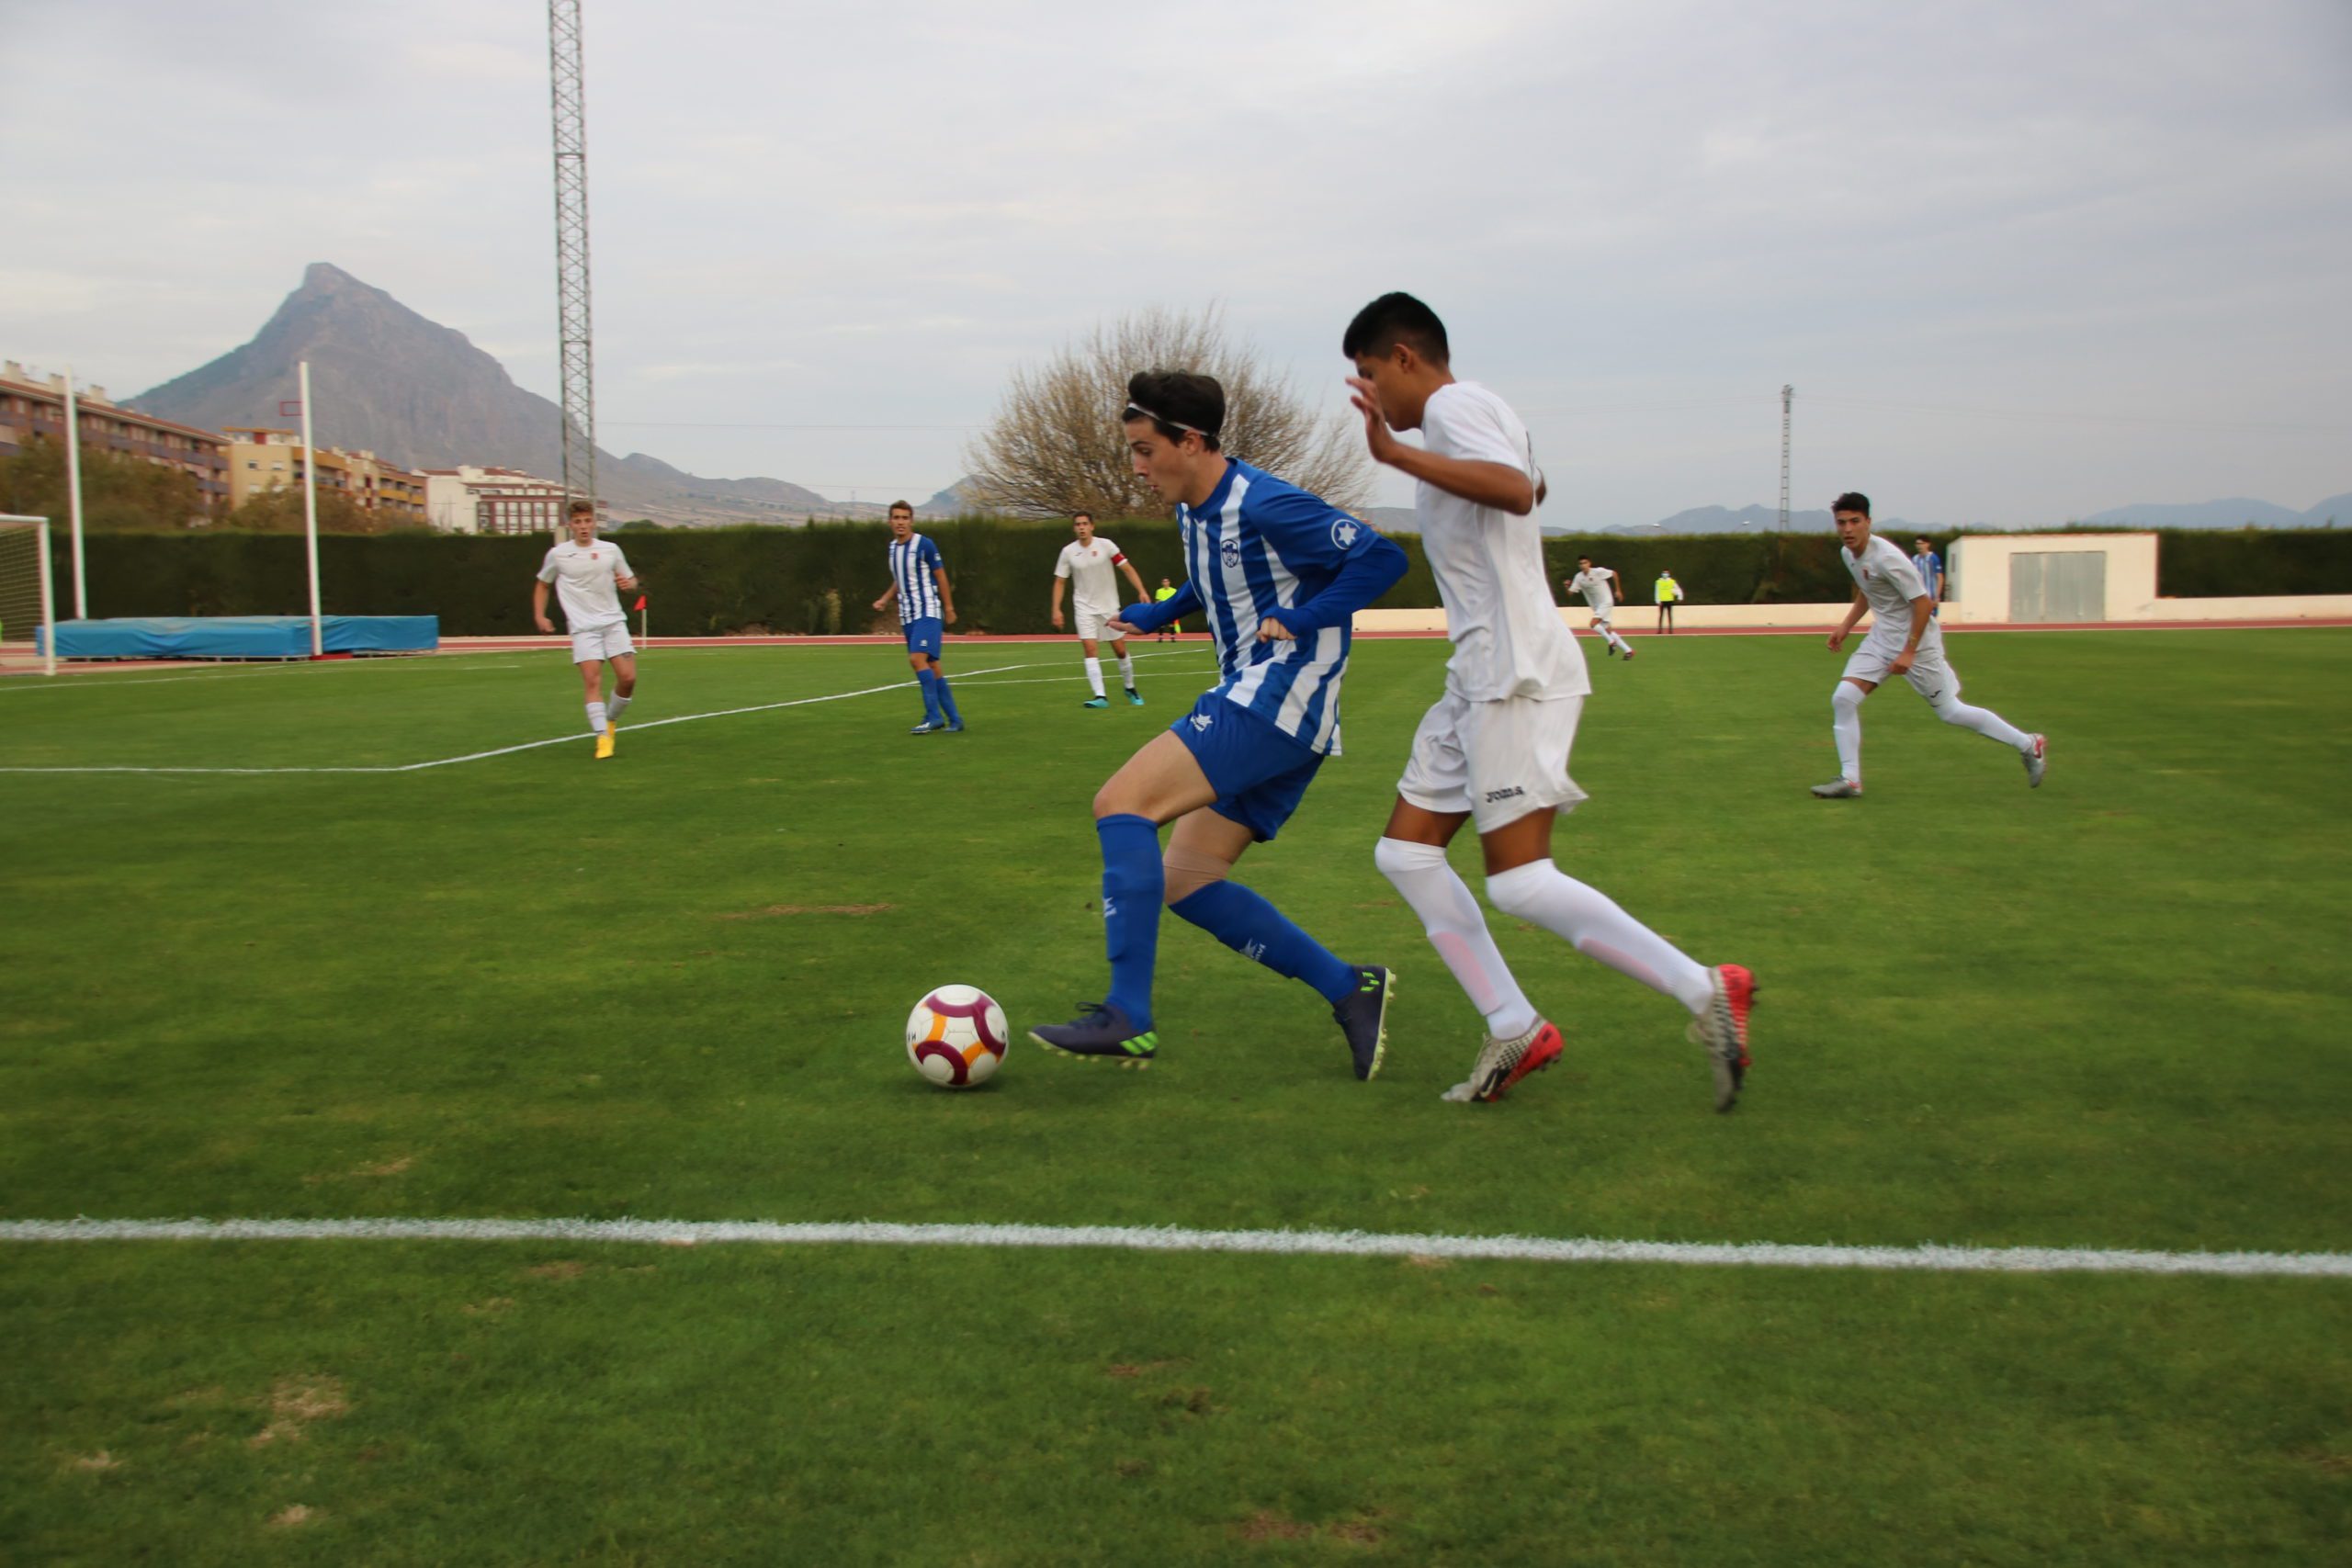 Con su primera victoria (1-0), el Juvenil viaja a Beniaján con más confianza